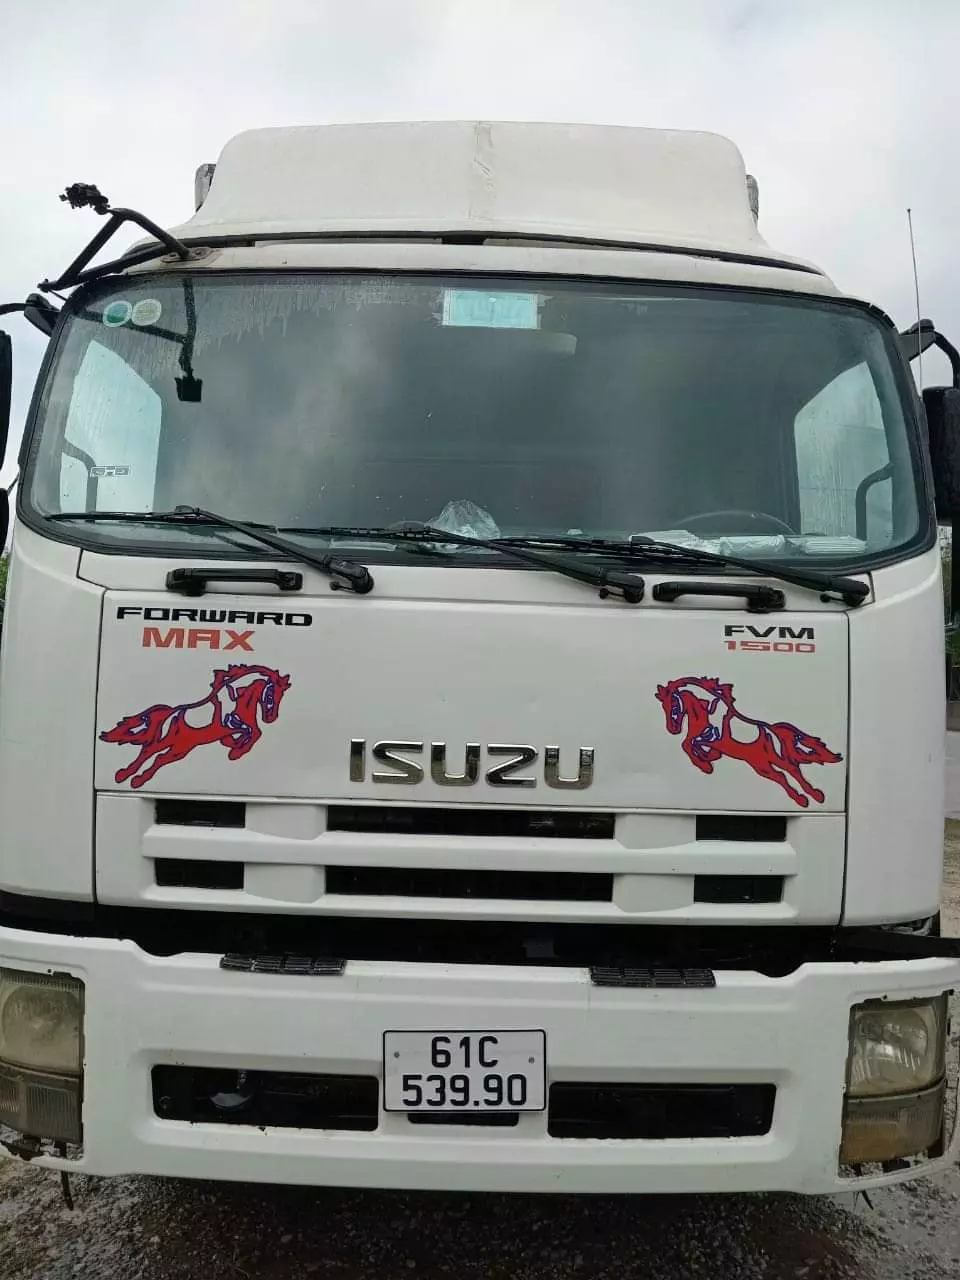 Bán xe Izuzu đời 2010 tải 15t thùng kín dài 8.1m cao 2m53... -4